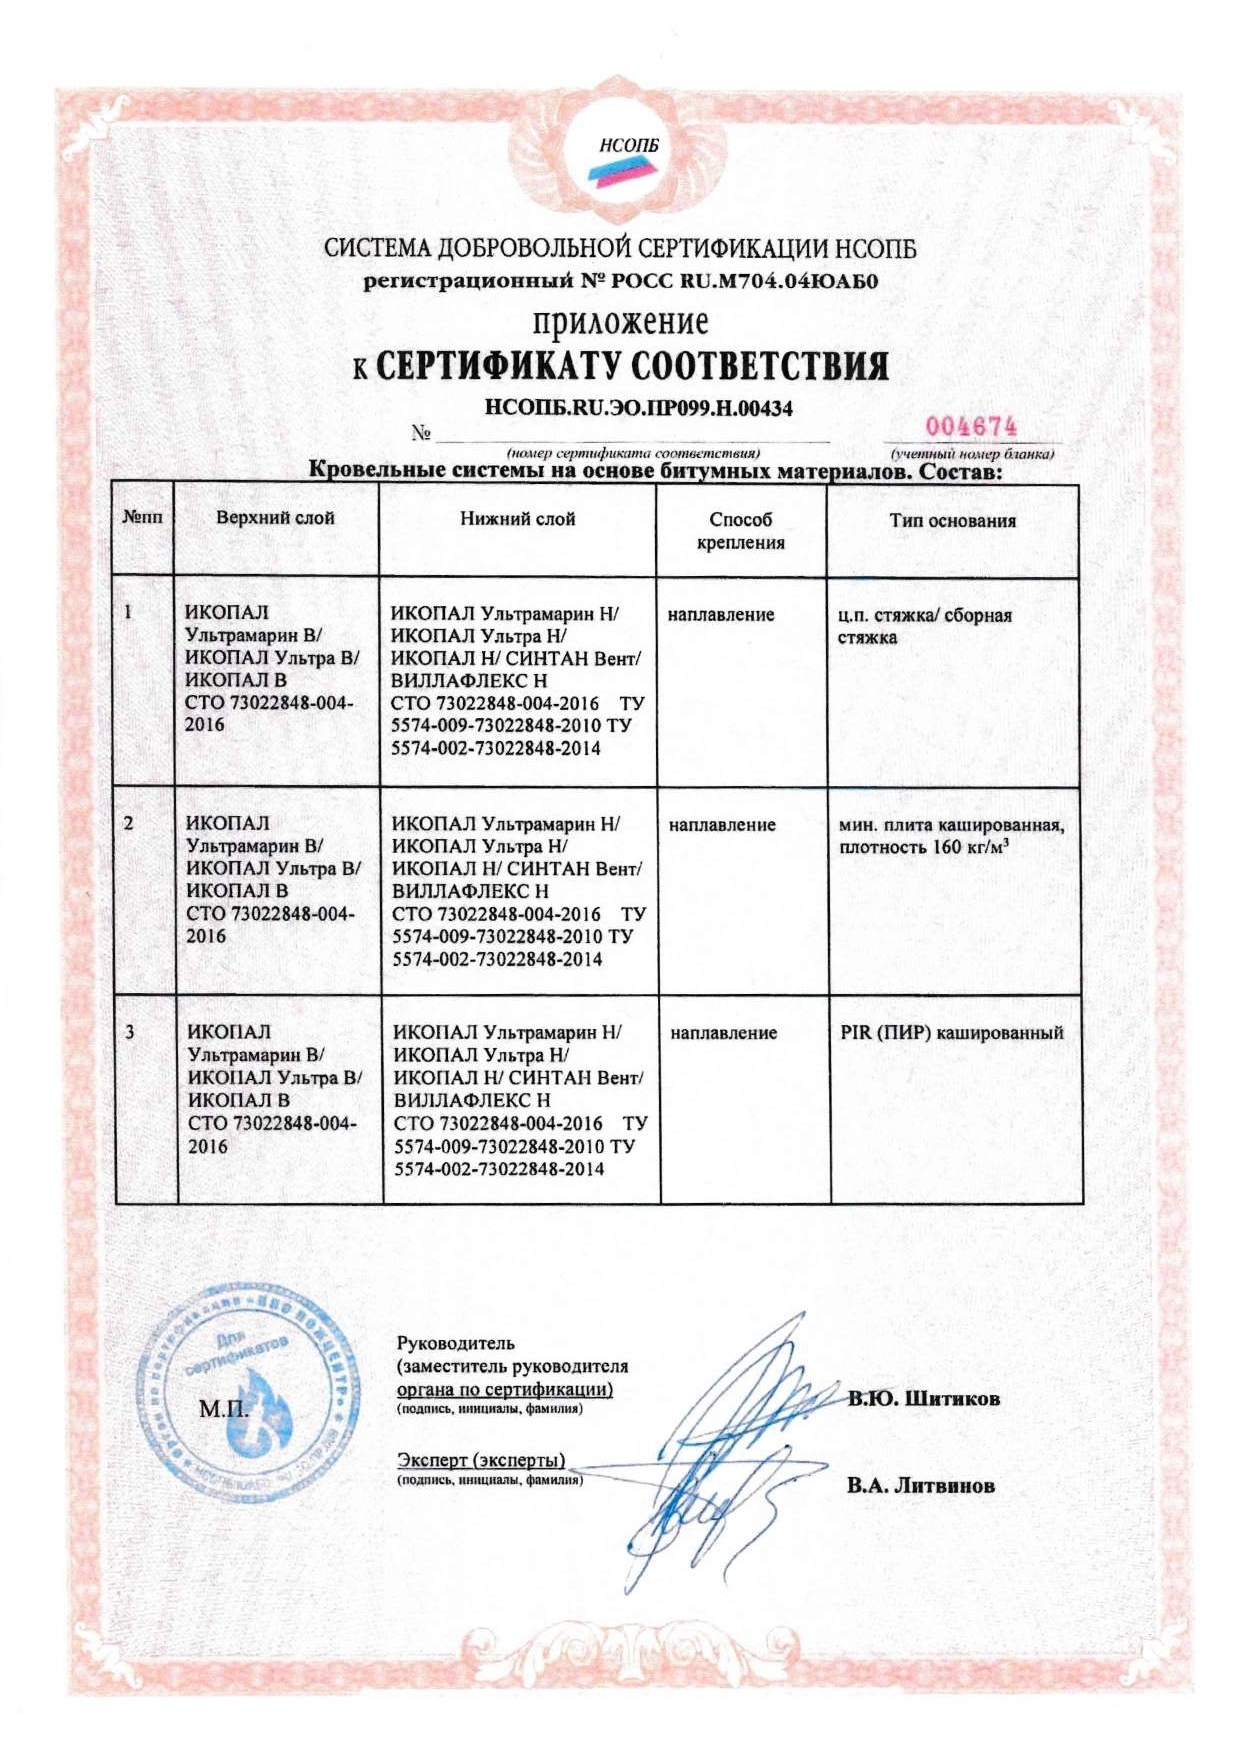 Сертификат соответствия о Техническом регламенте о требованиях пожарной безопасности 2